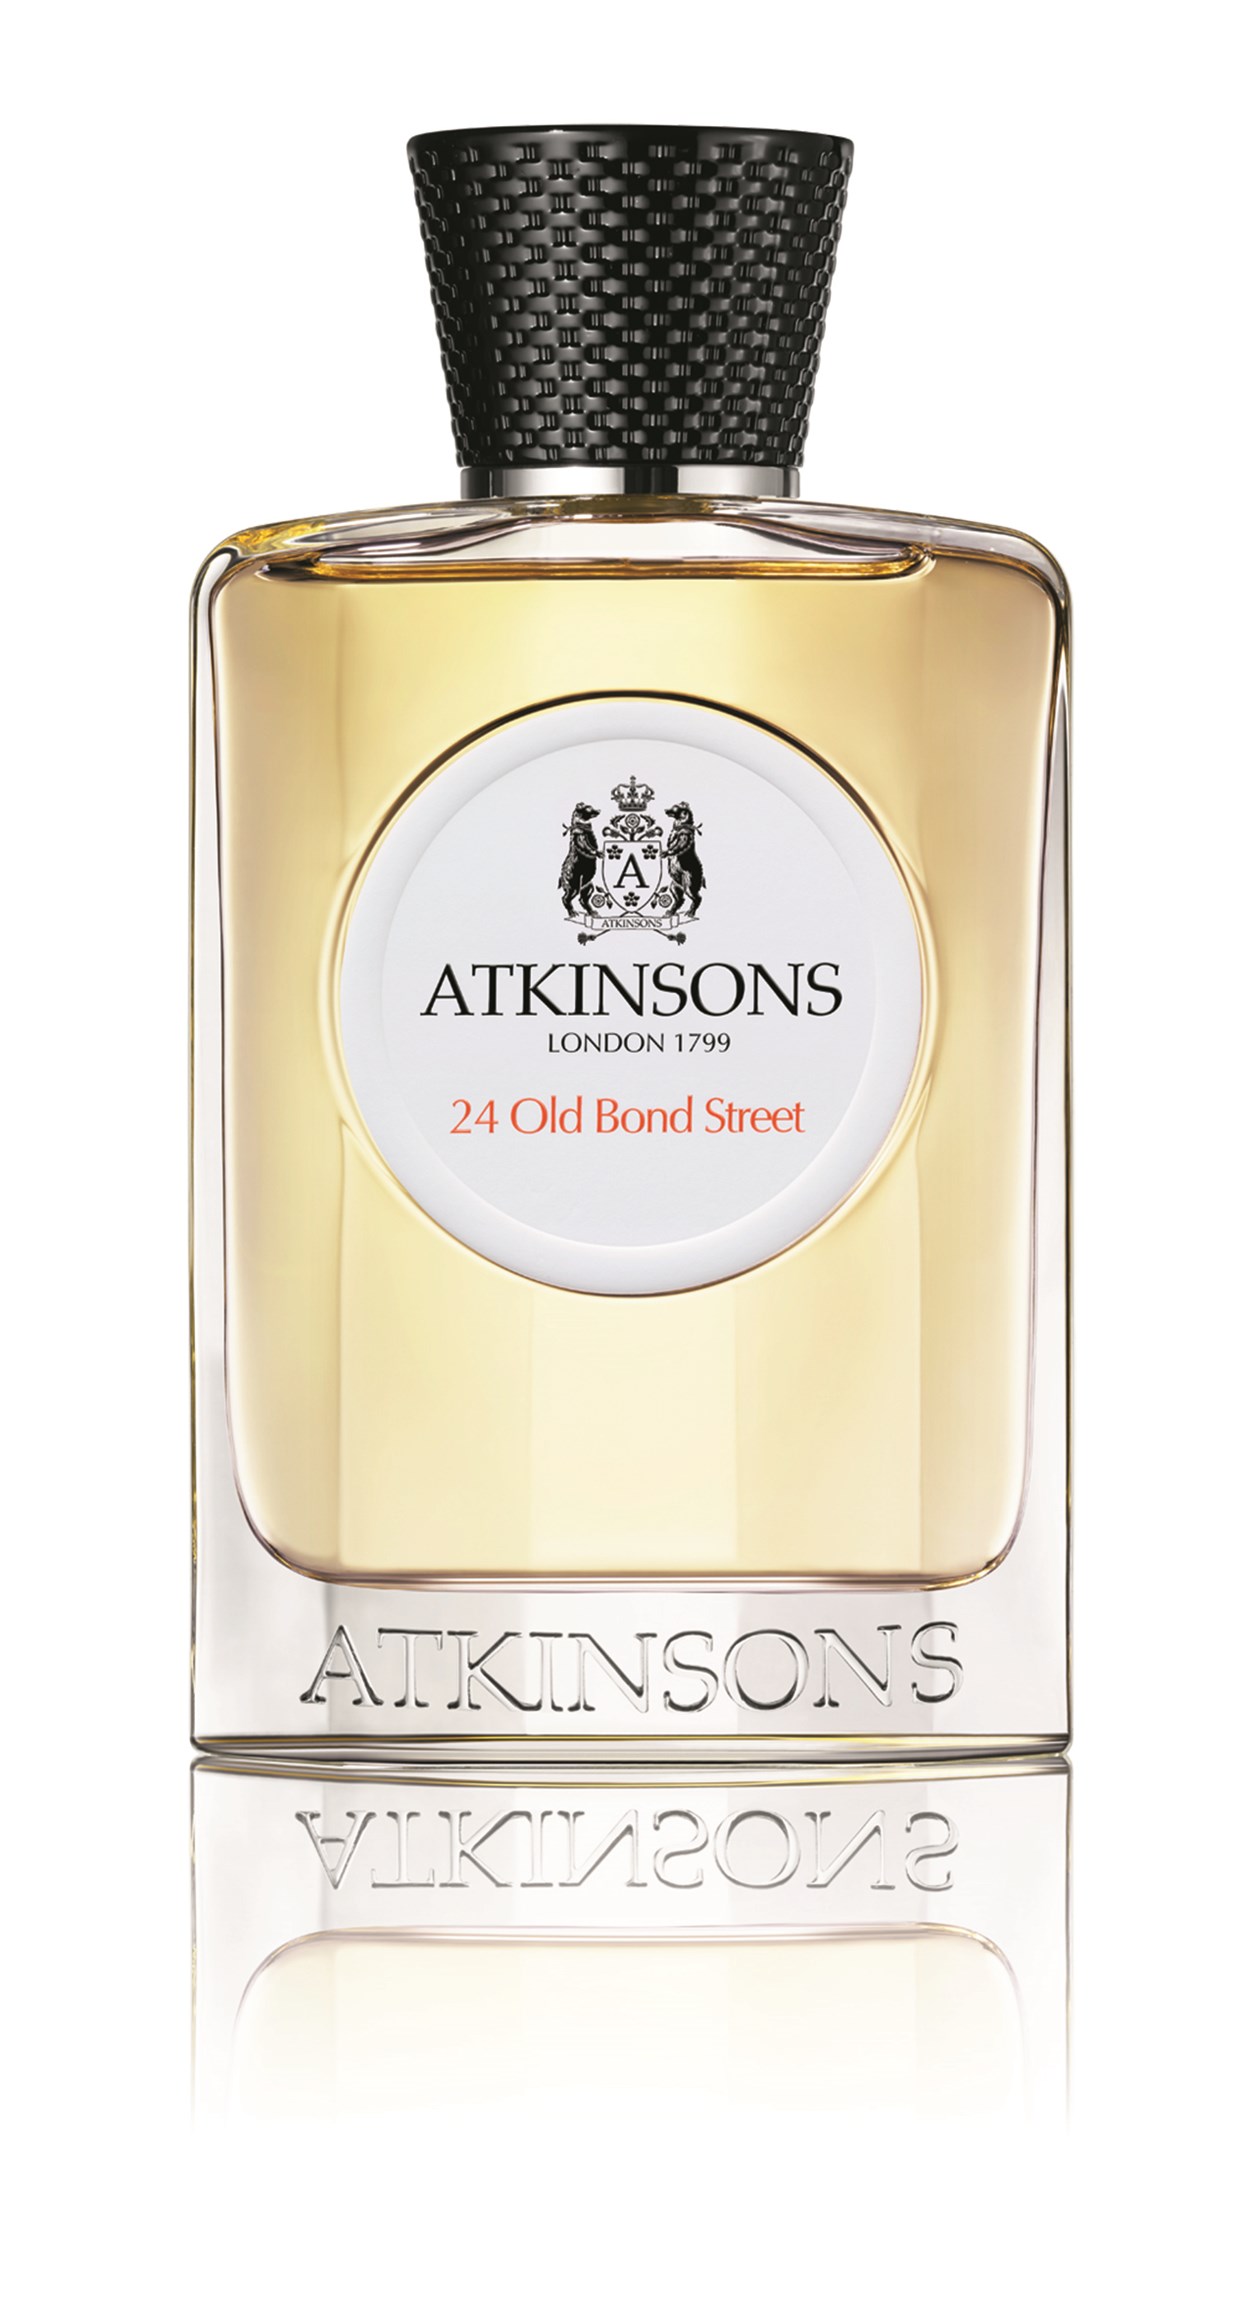 Atkinsons 24 Old Bond Street Eau de Cologne 50ml